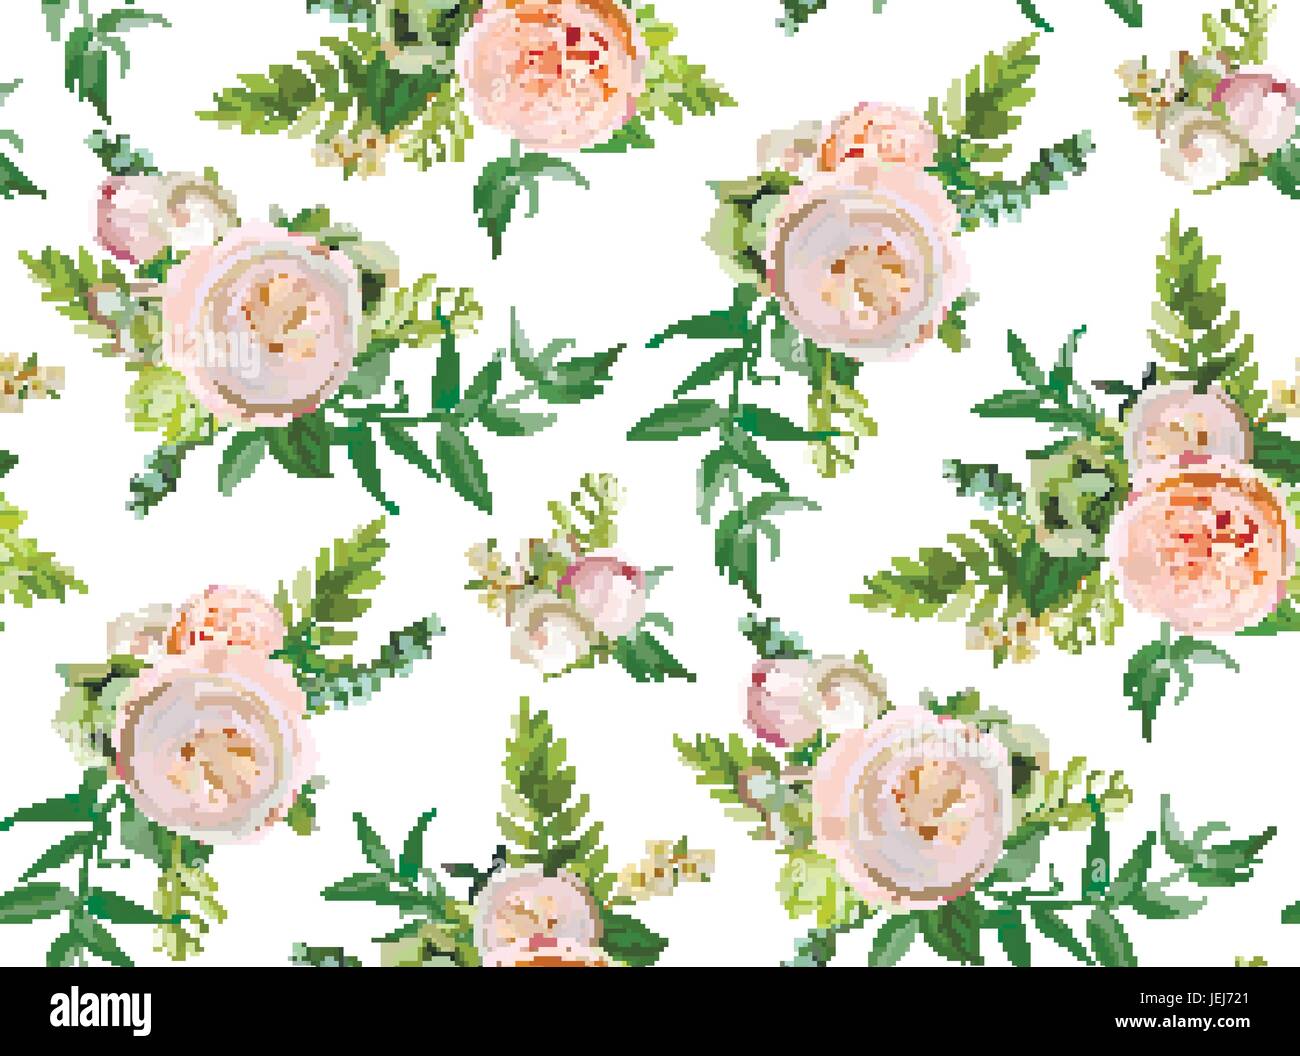 Nahtlose Vektormuster: Blumensträuße von rosa weiße Garten rose grüne saftige Kaktus Blumen Saisonpflanzen elegantes Design für Blumen Aquarell hinsichtlich Stock Vektor